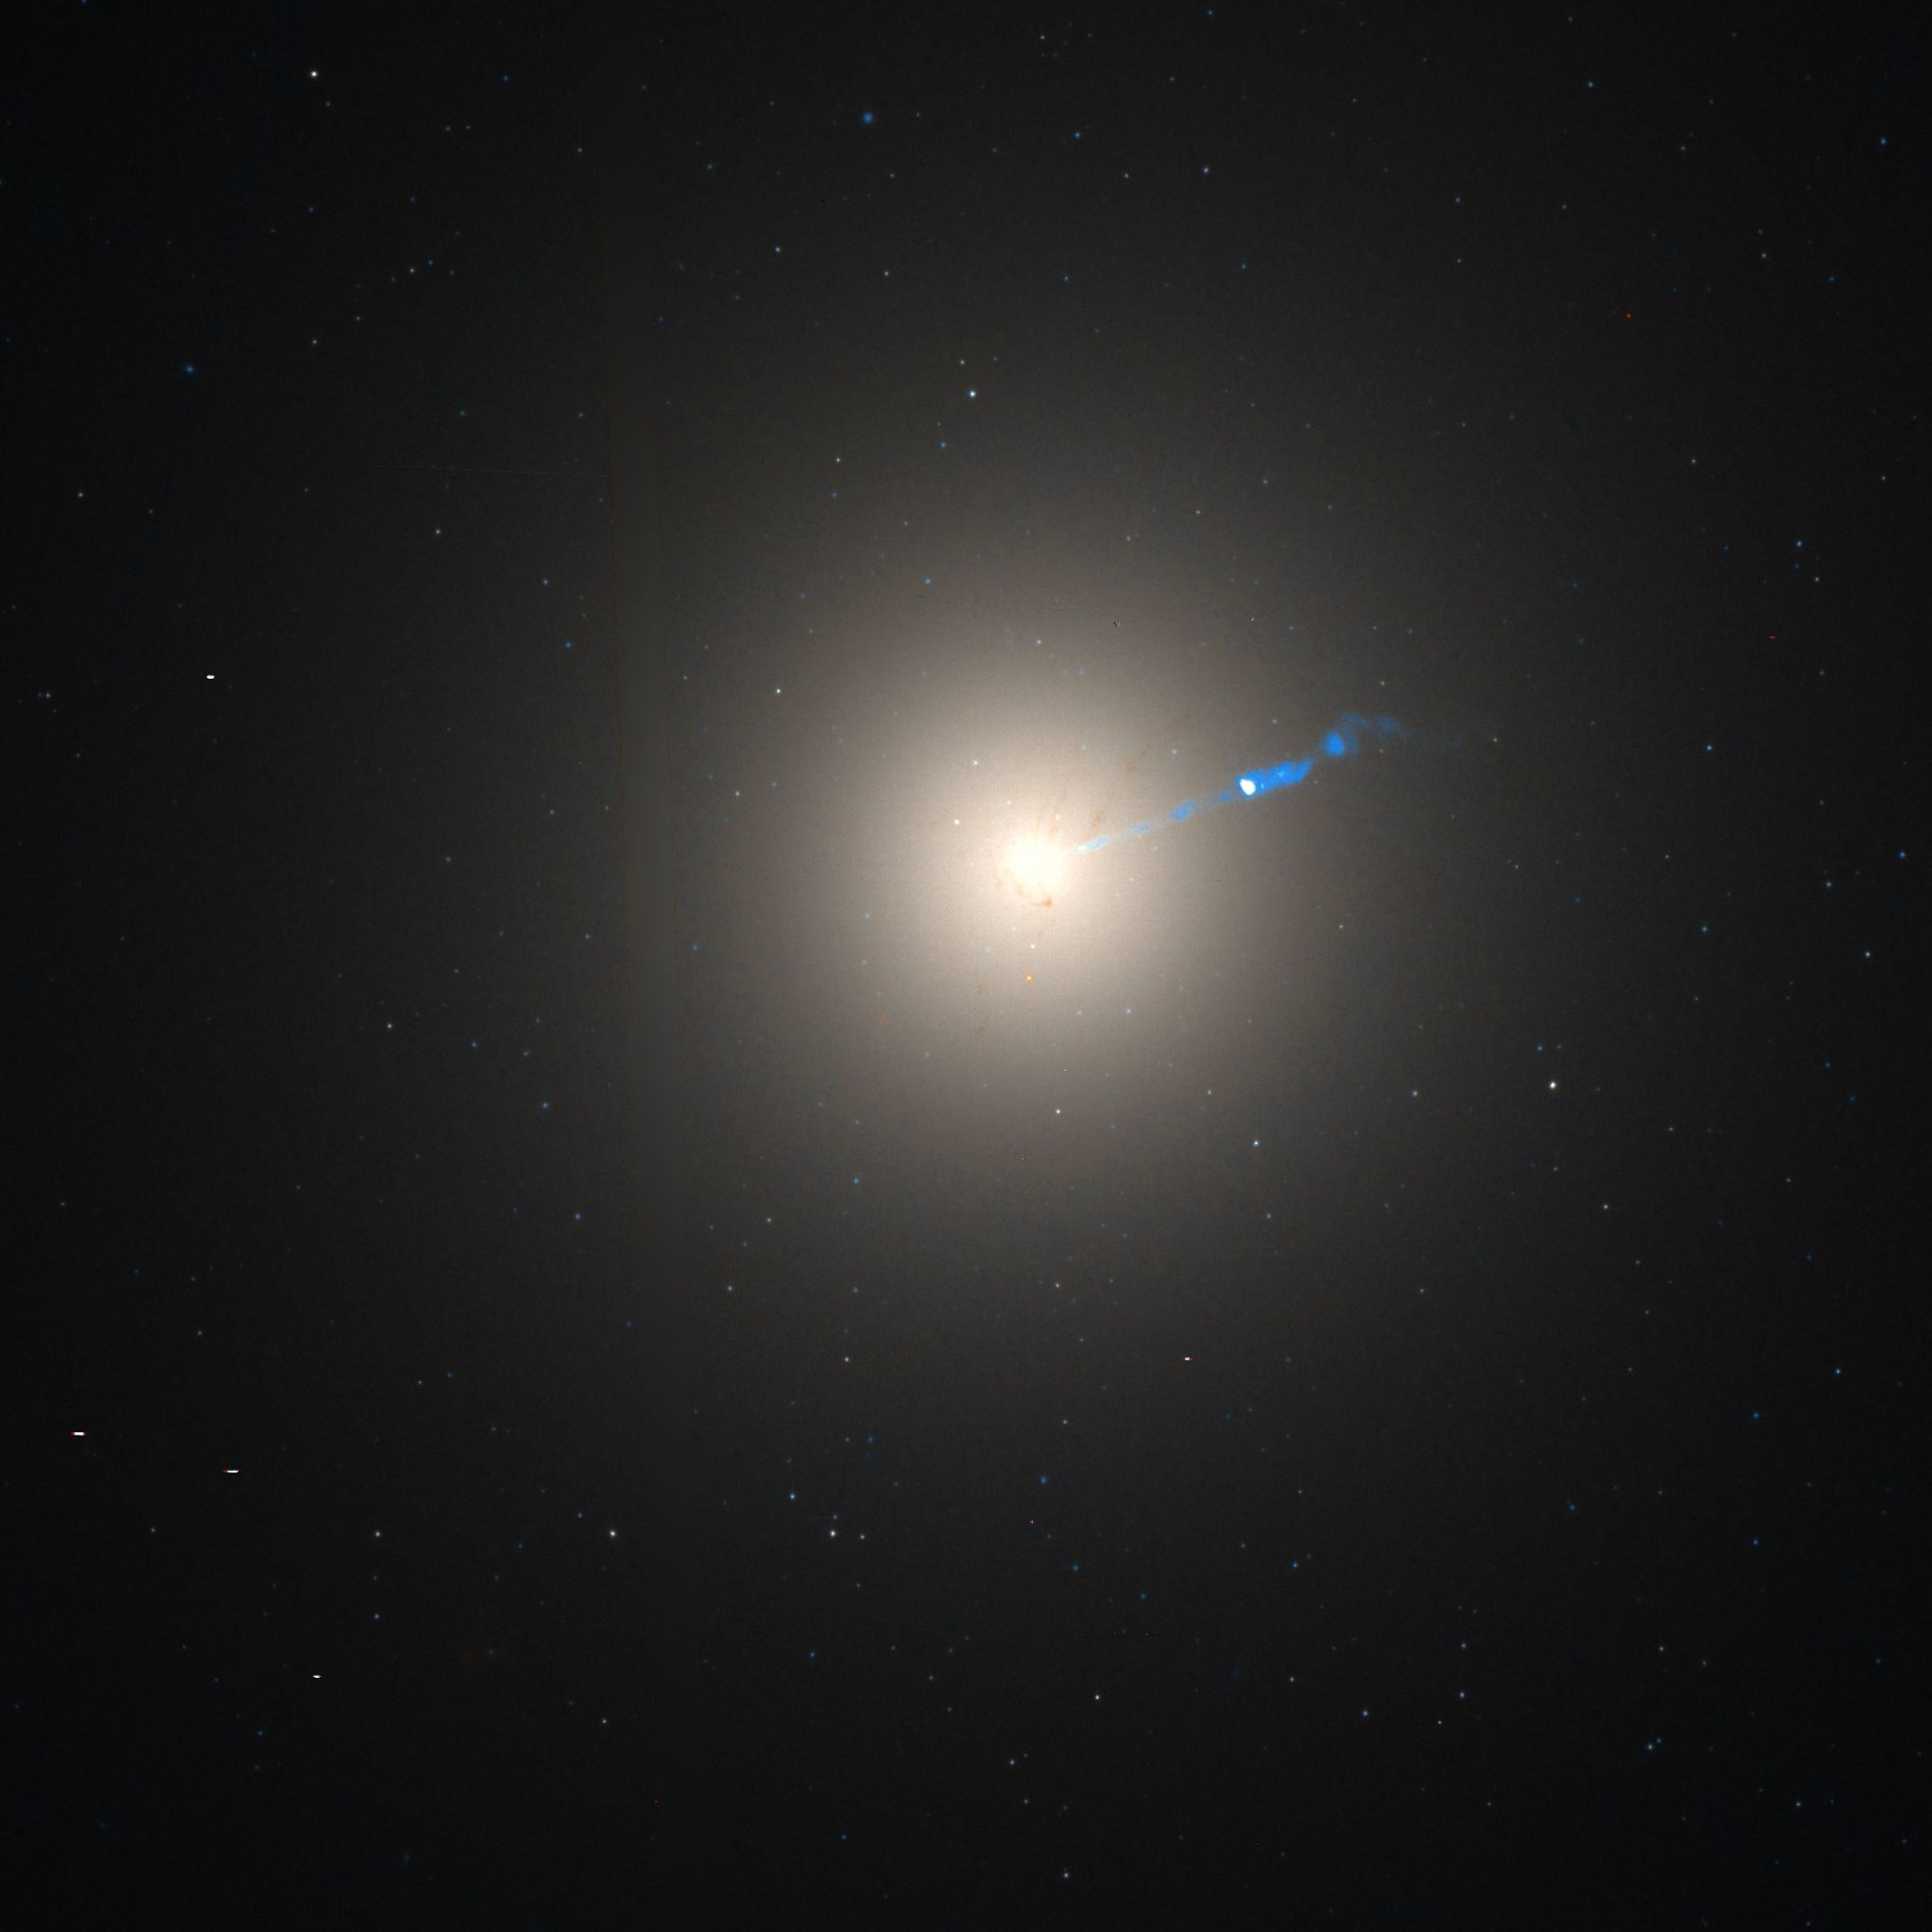 Galáxia M87 em luz visível e imagem infravermelha